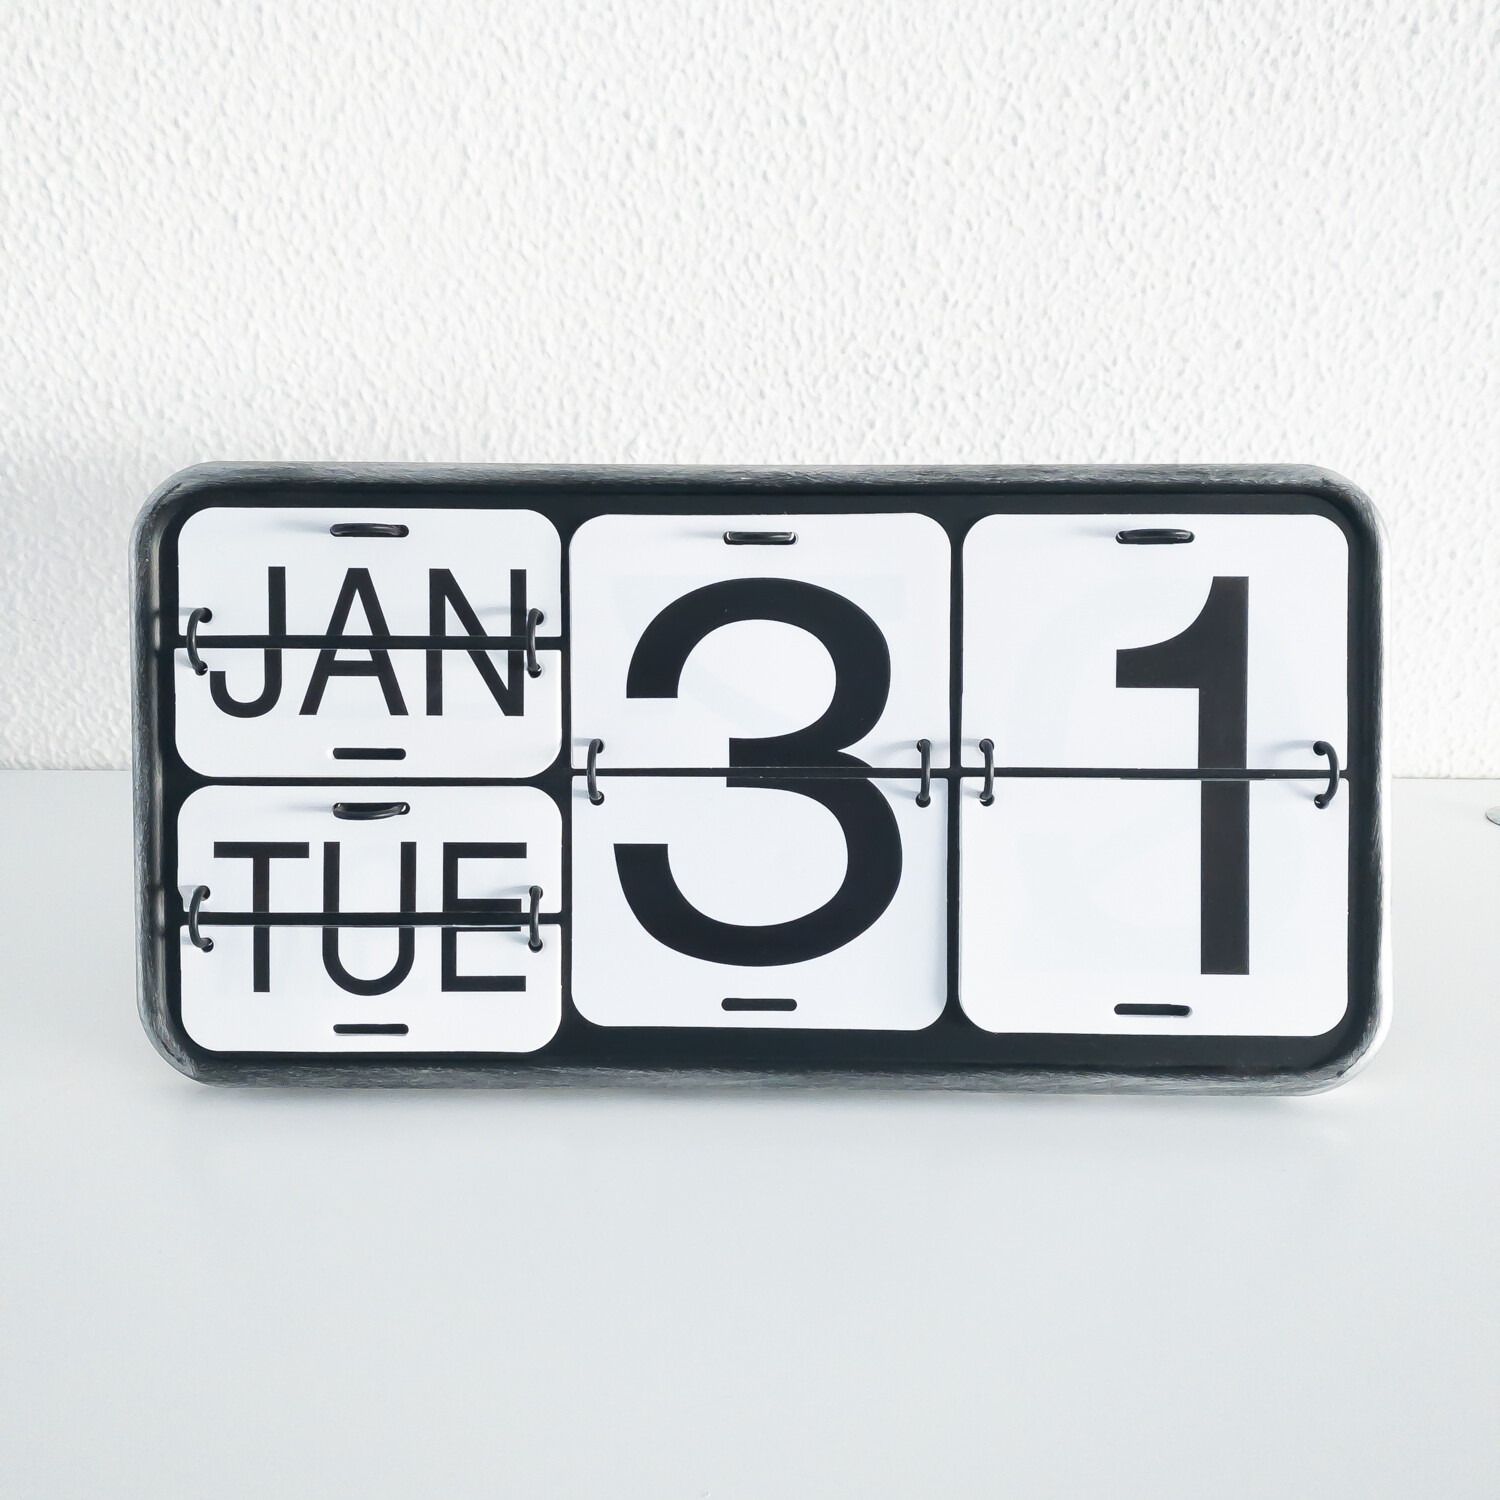 Perpetual desk calendar in metal